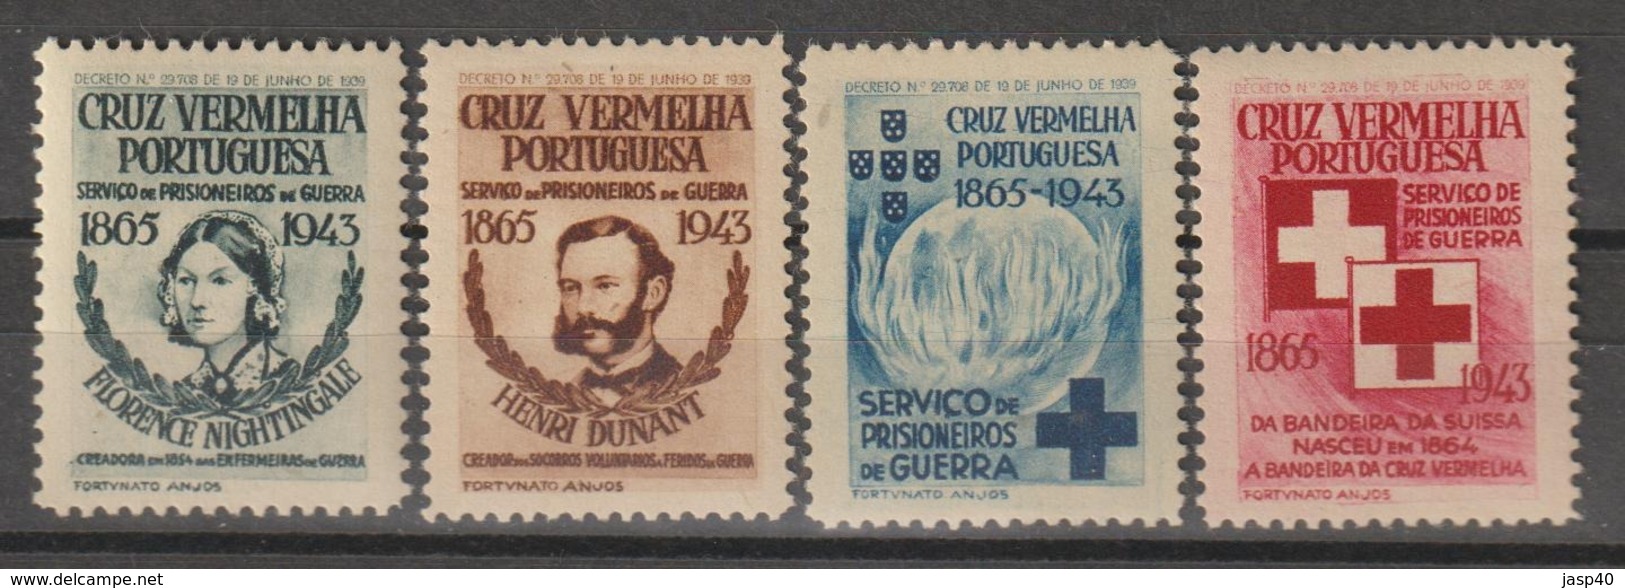 PORTUGAL - CRUZ VERMELHA EMISSÃO DE 1944 - Nuevos